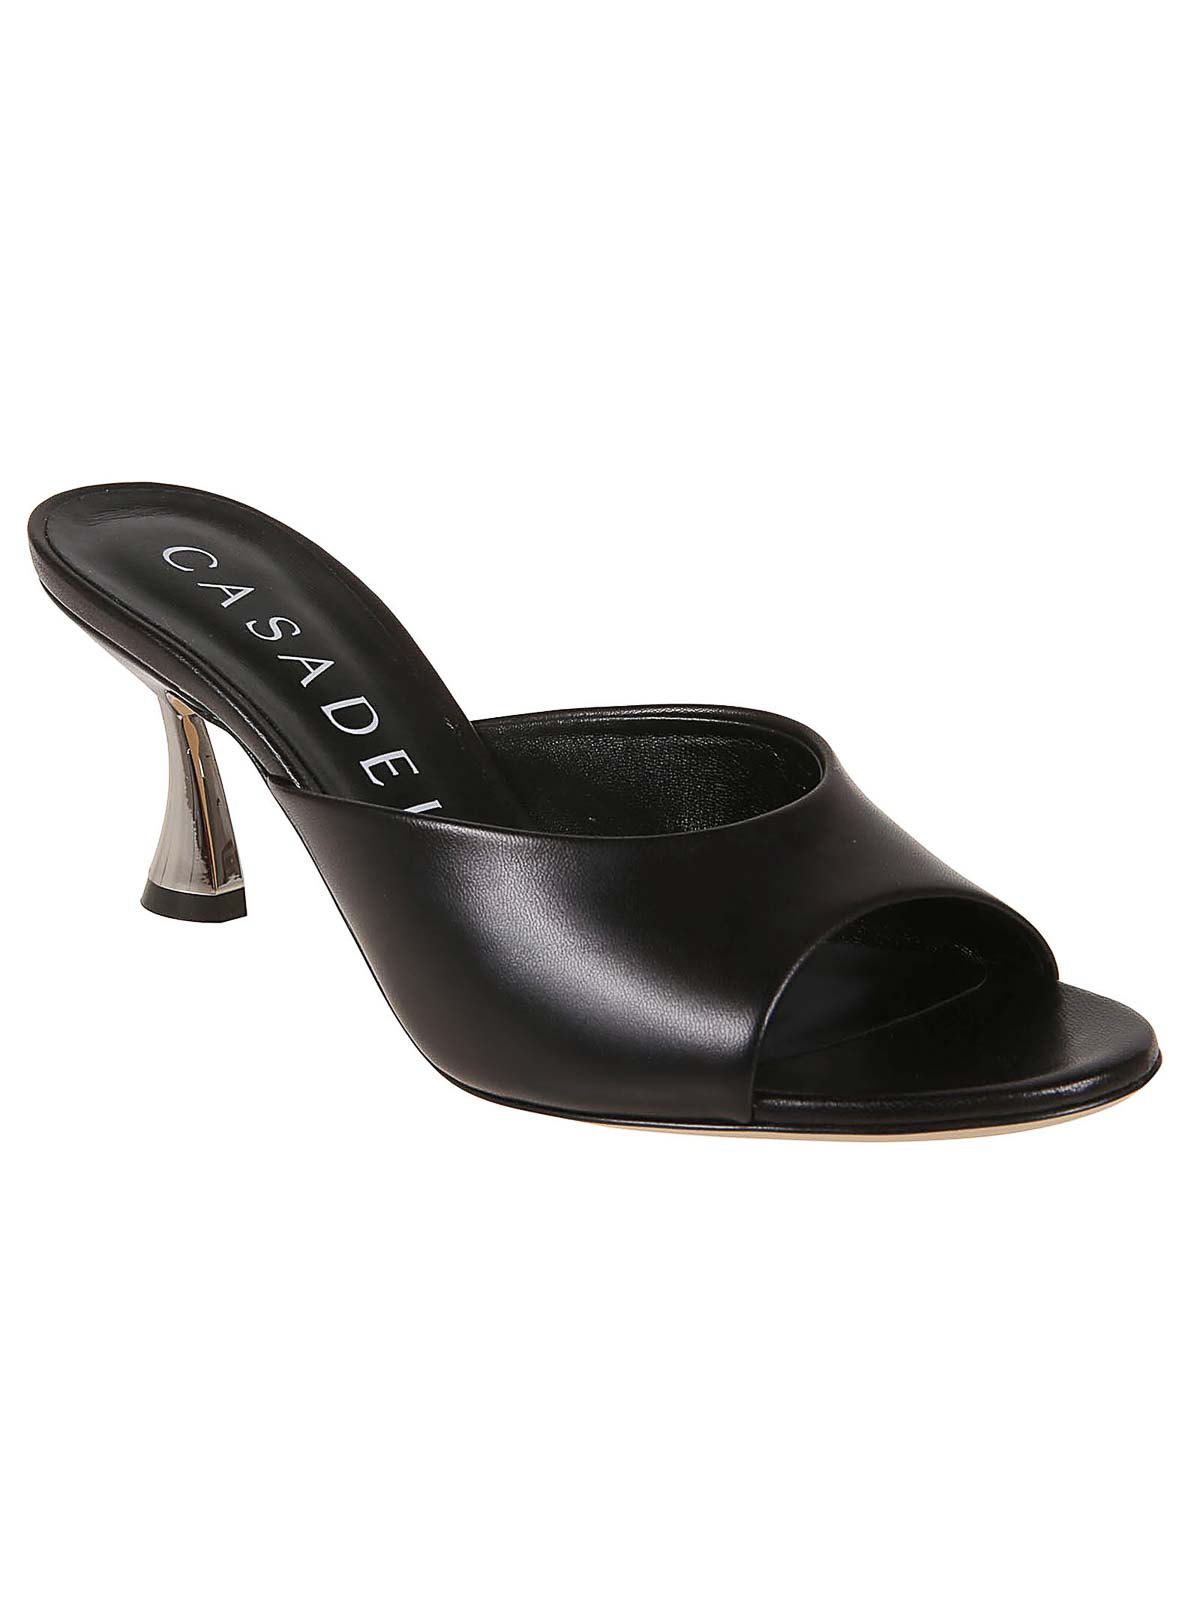 Shop Casadei Zapatos De Salón - Lade Minorca In Black